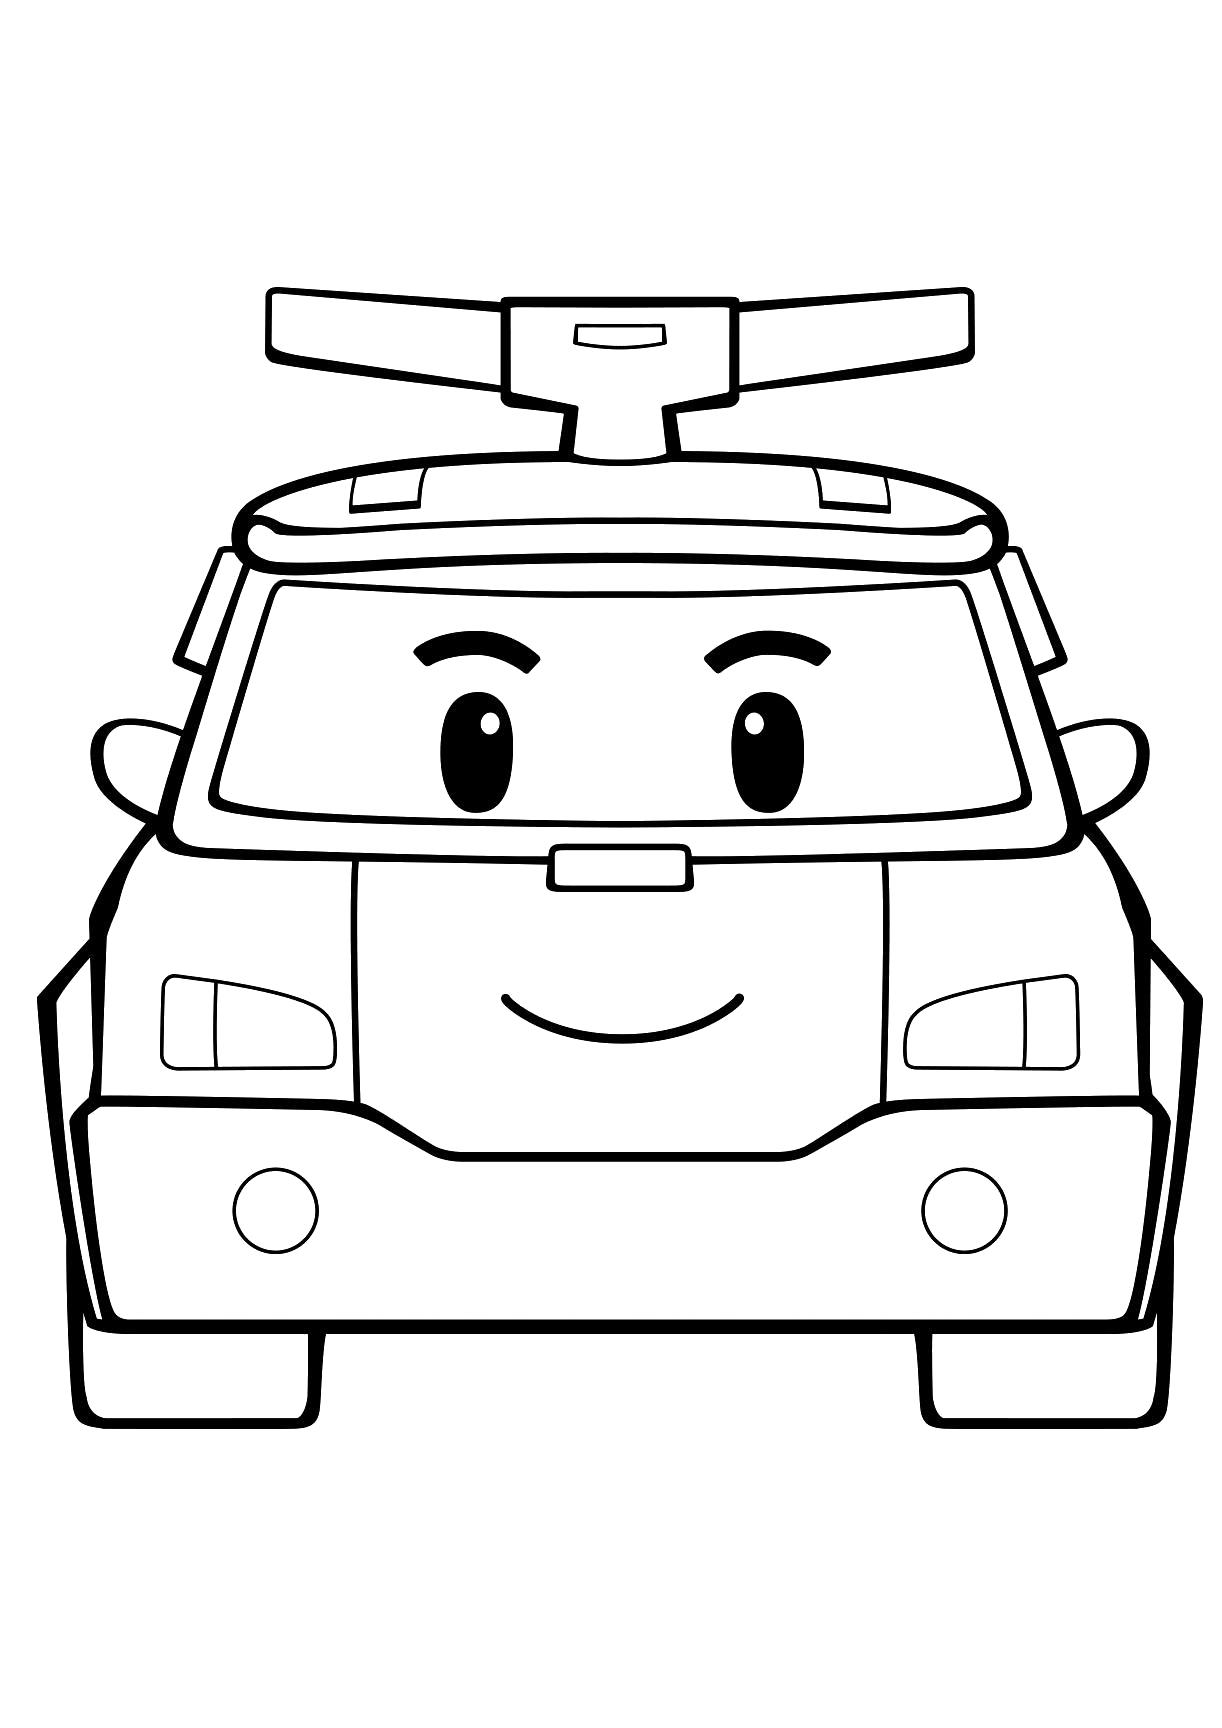 Раскраски Робокар Поли для детей - бесплатно скачать или распечатать онлайн (Робокар, Поли)